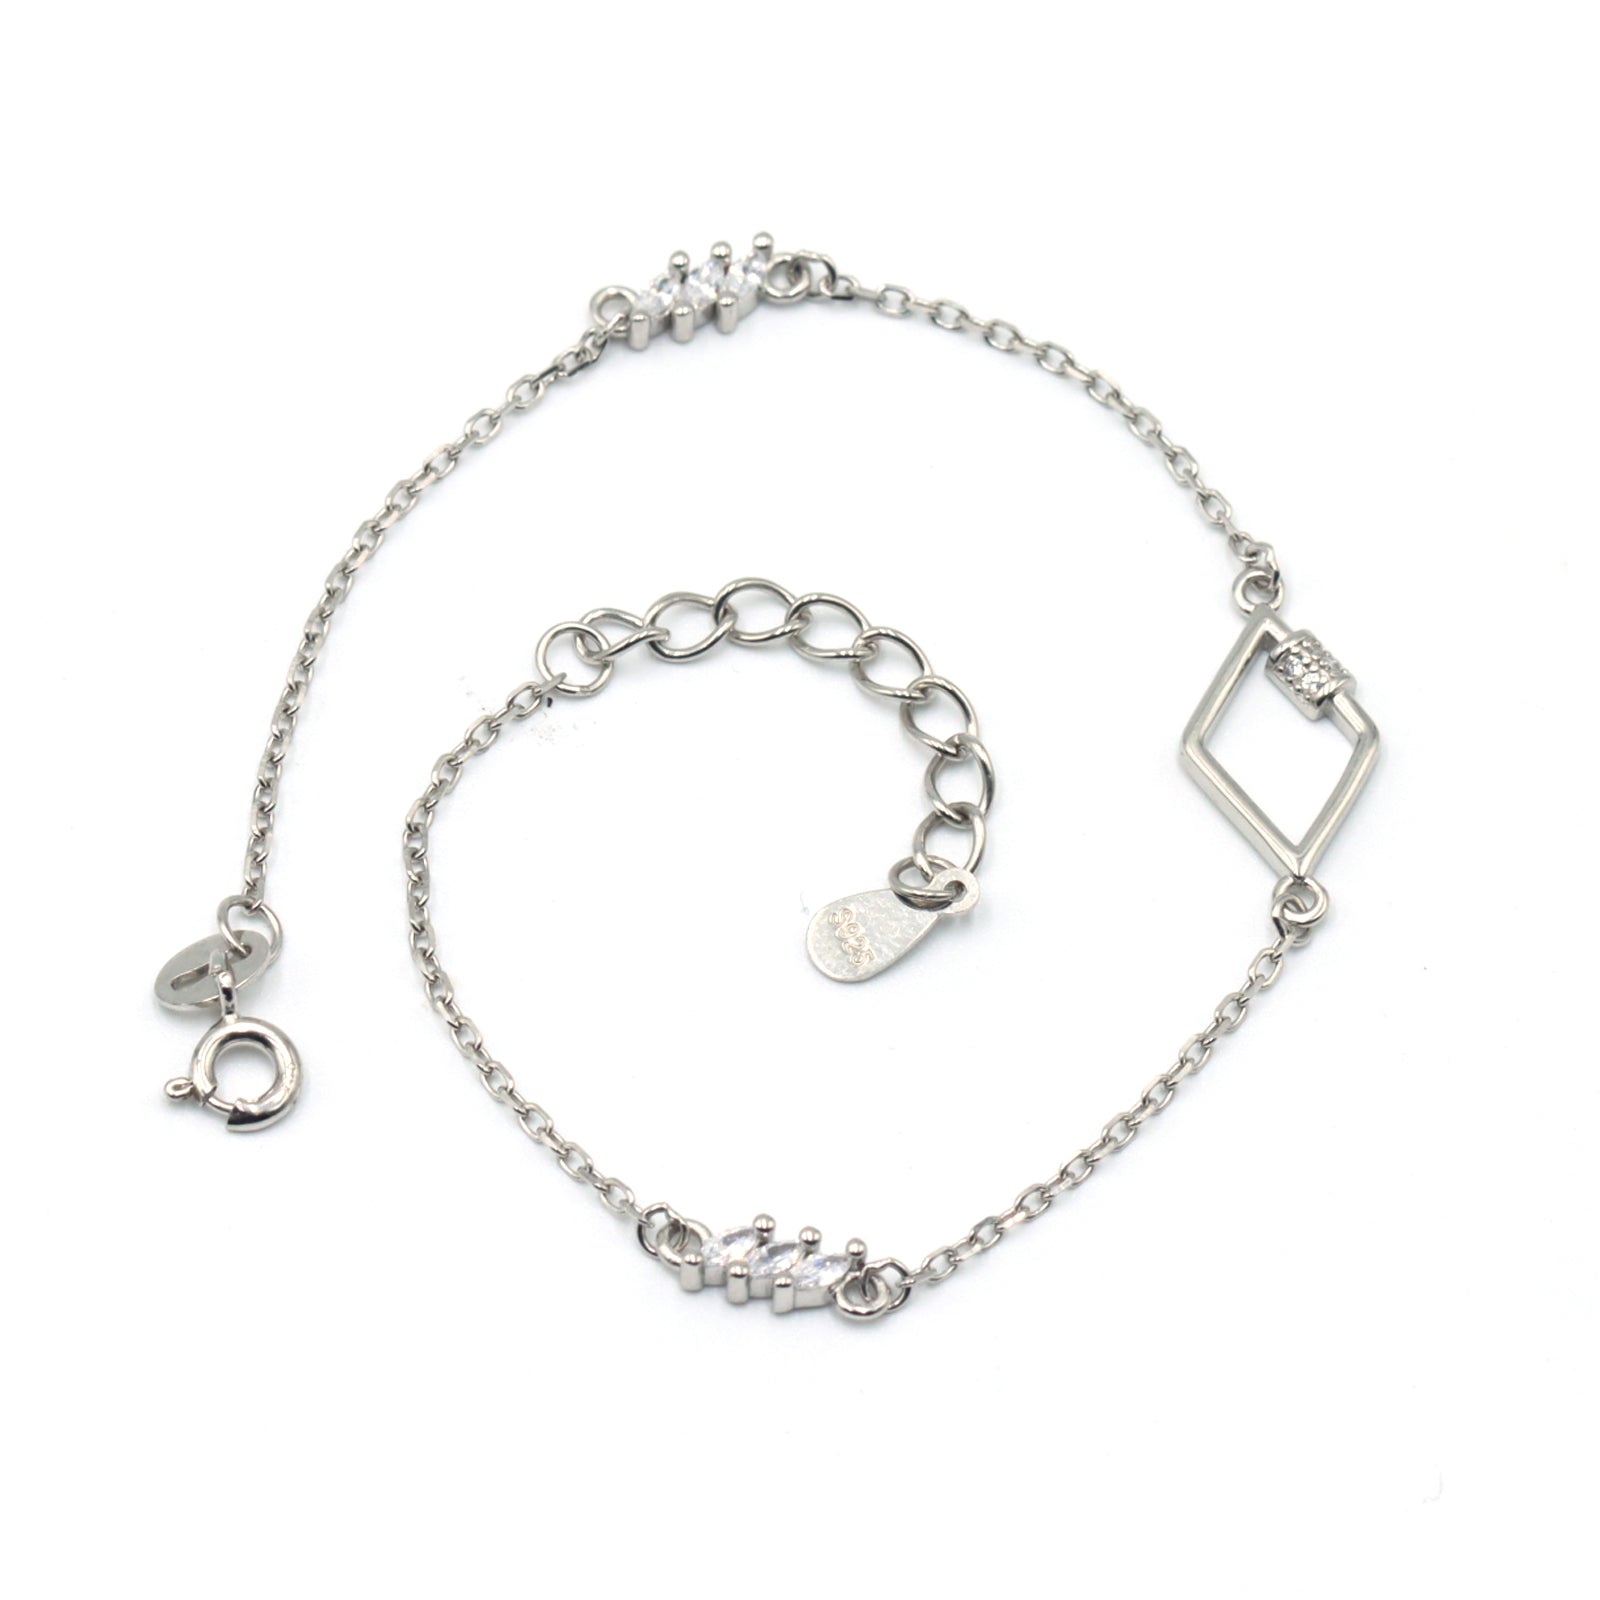 Silver rhombus shape chain bracelet